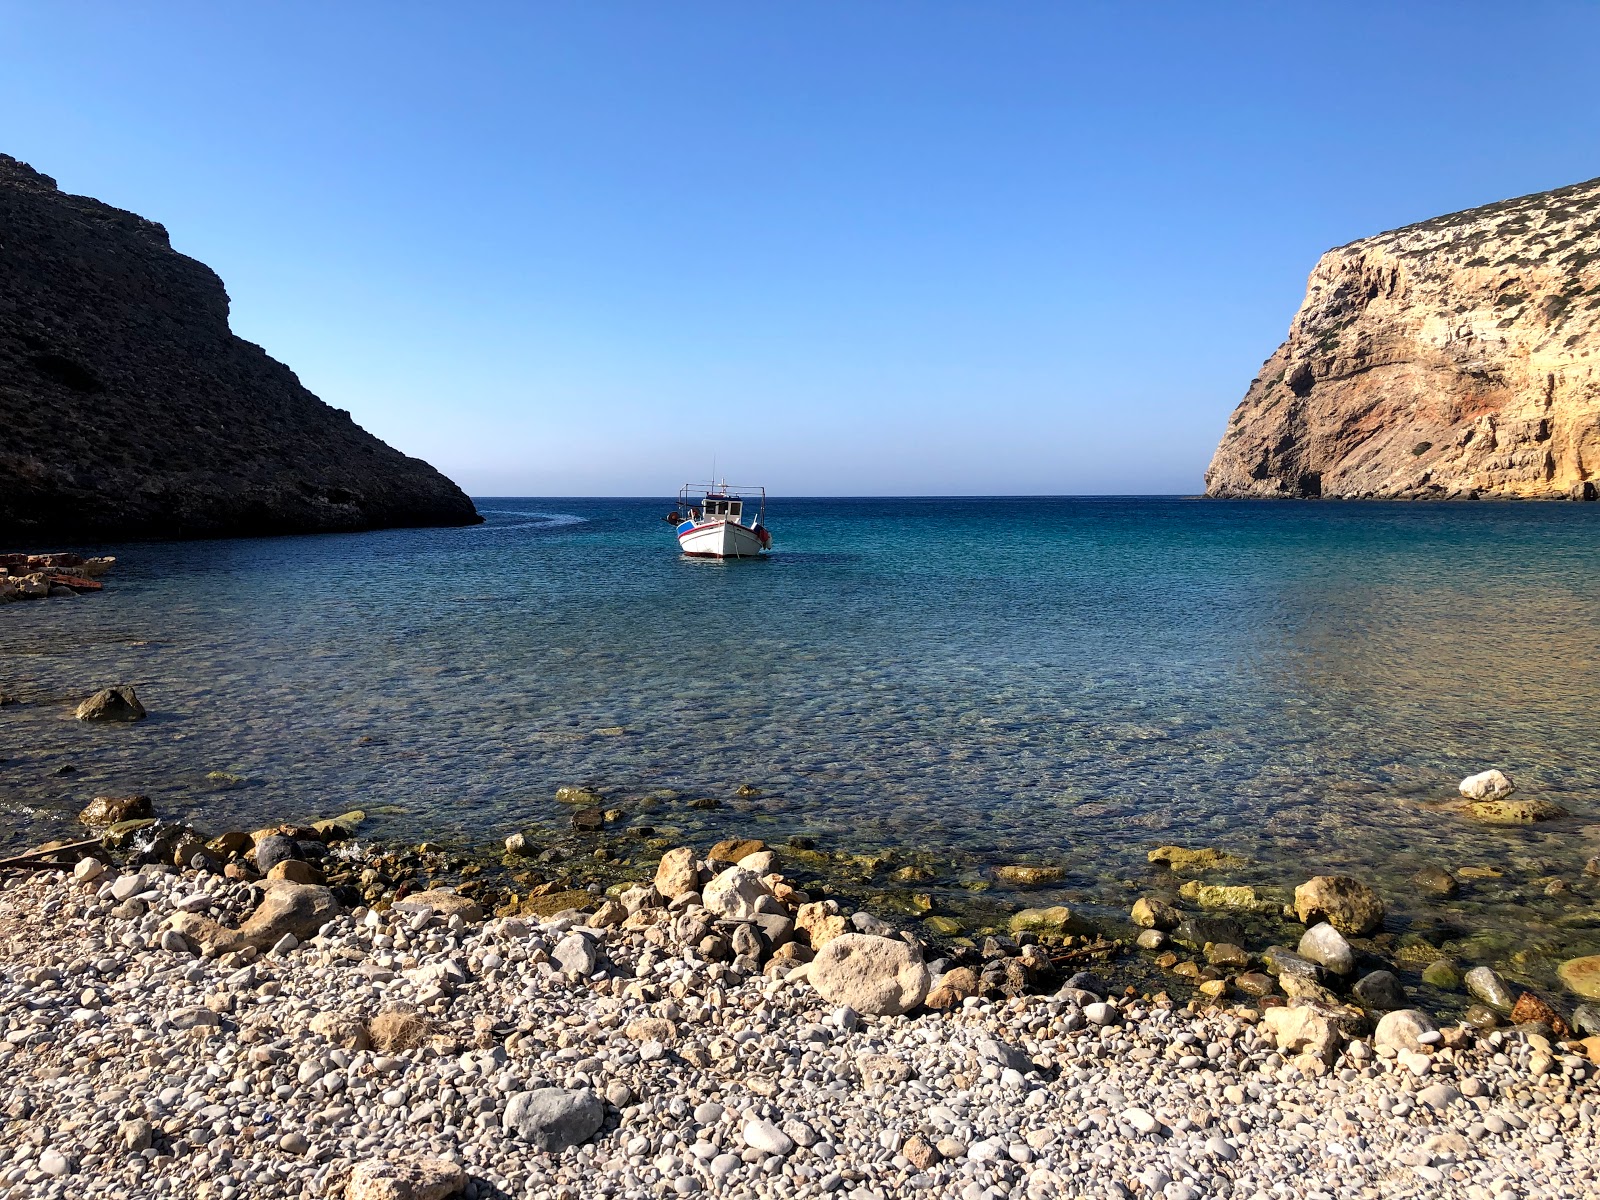 Foto de Helatros Beach Kasos Greece - lugar popular entre los conocedores del relax